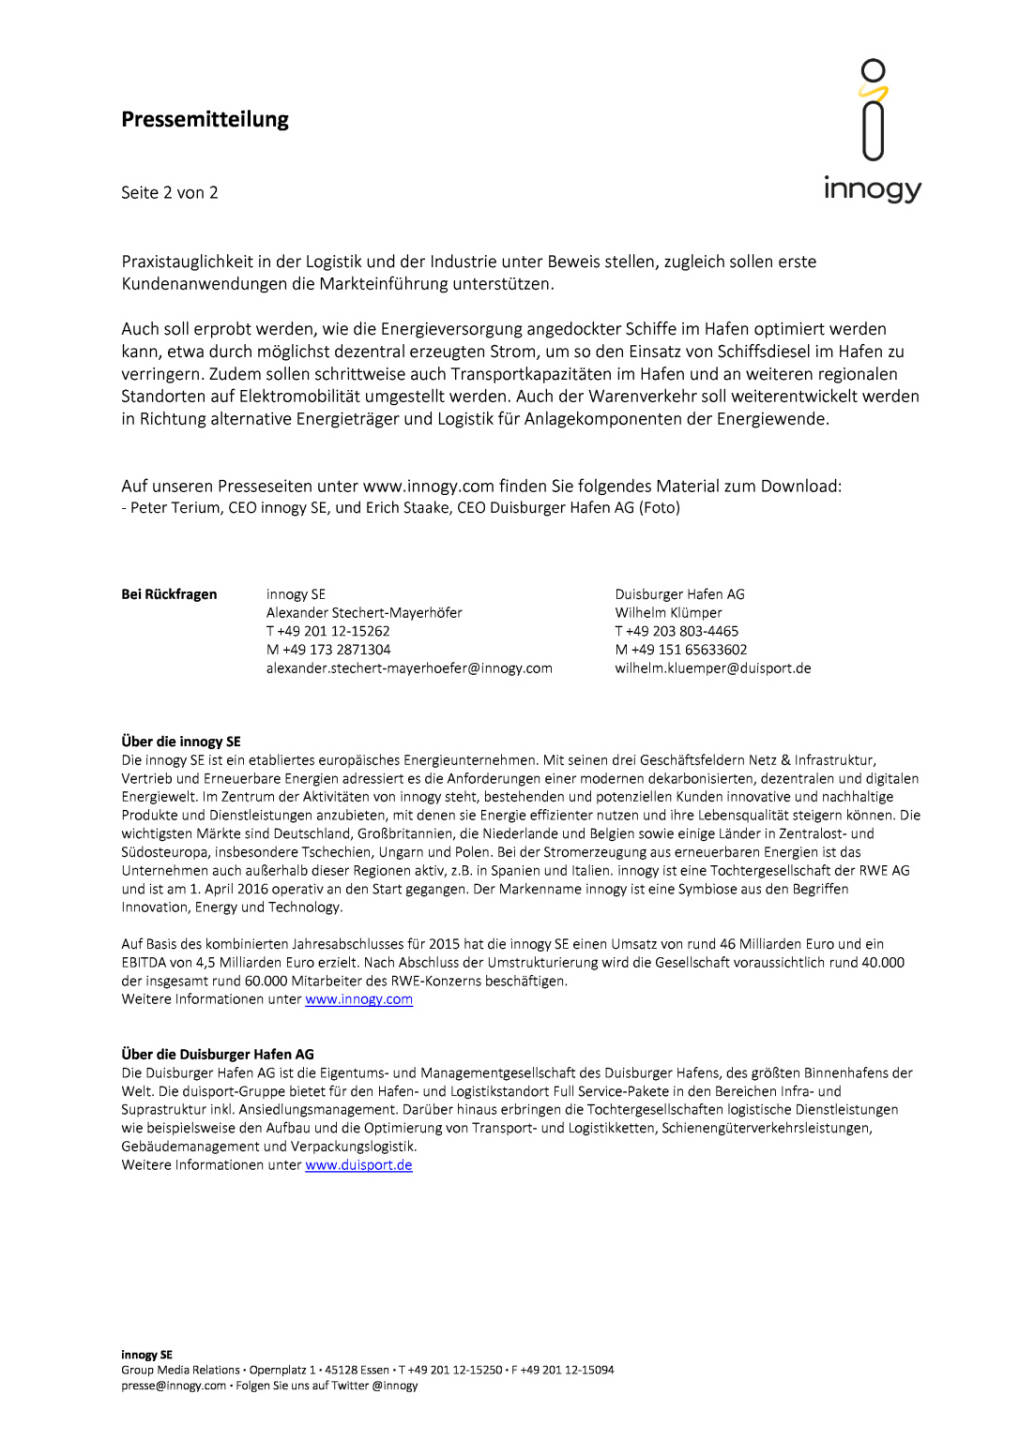 innogy und Duisburger Hafen: strategische Partnerschaft, Seite 2/2, komplettes Dokument unter http://boerse-social.com/static/uploads/file_1945_innogy_und_duisburger_hafen_strategische_partnerschaft.pdf